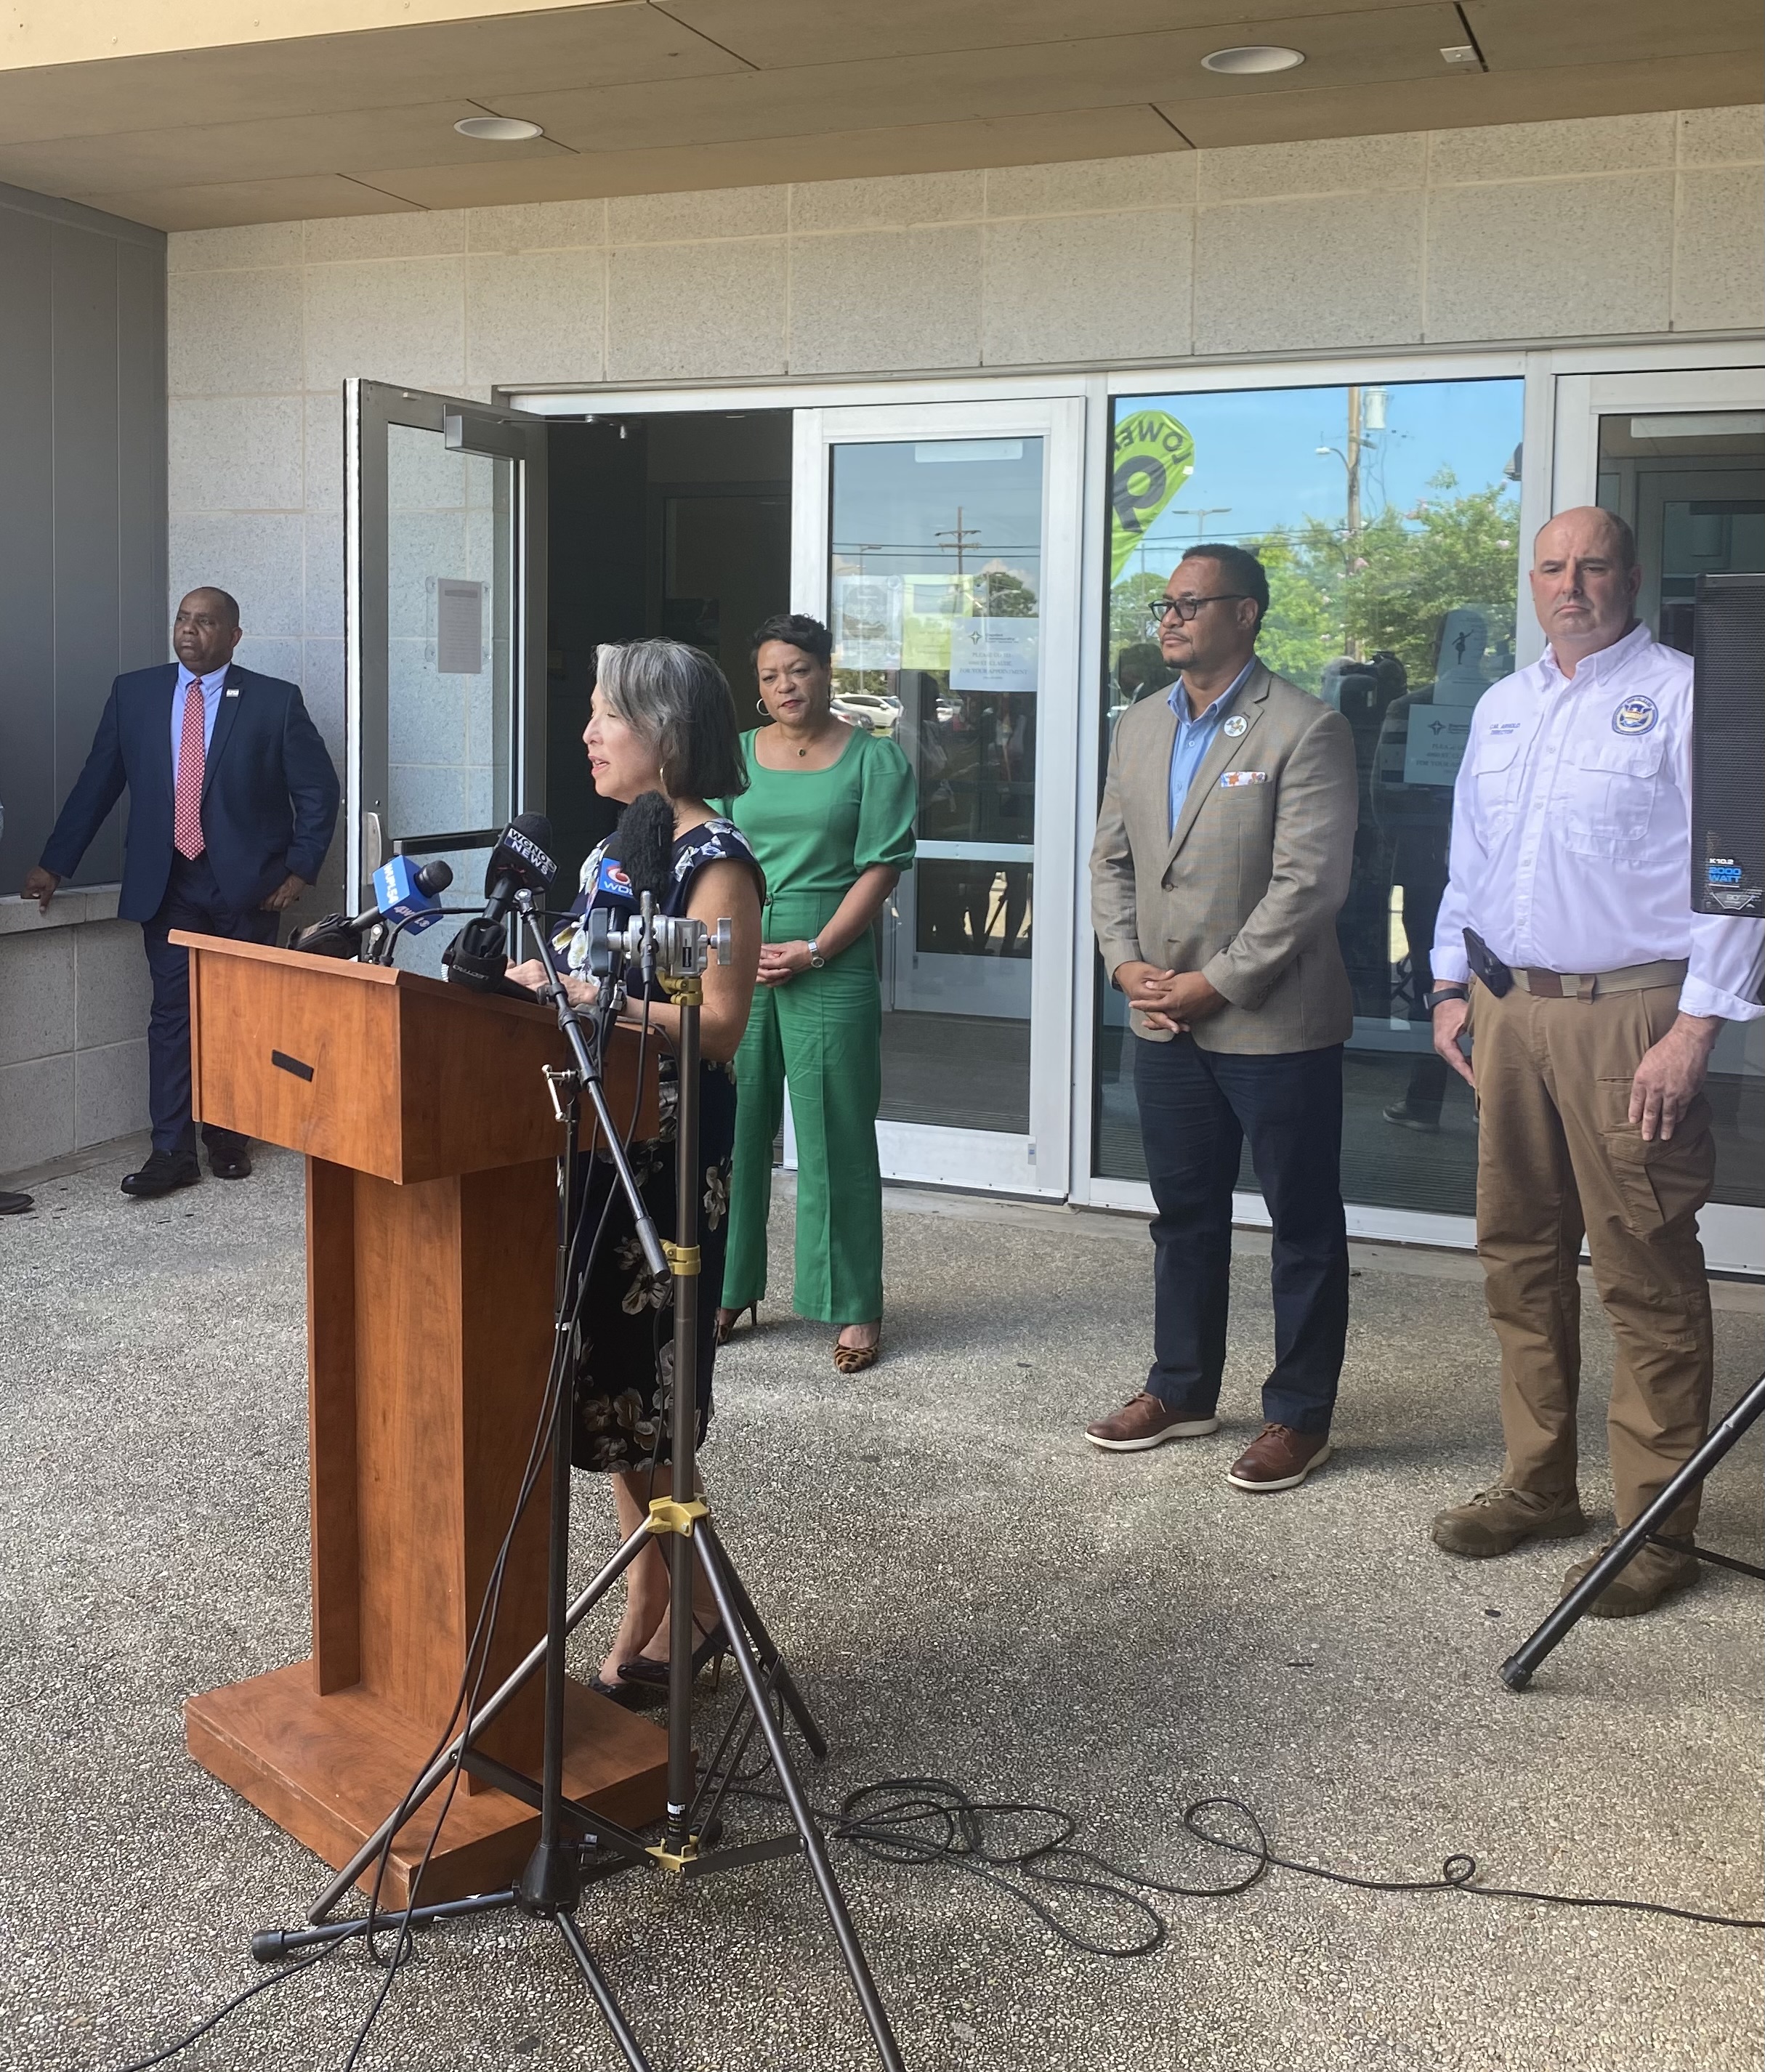 A presidente e CEO da Entergy New Orleans, Diana Rodriguez, falou sobre o Projeto de Prontidão do Gerador do Sanchez Multipurpose Center.